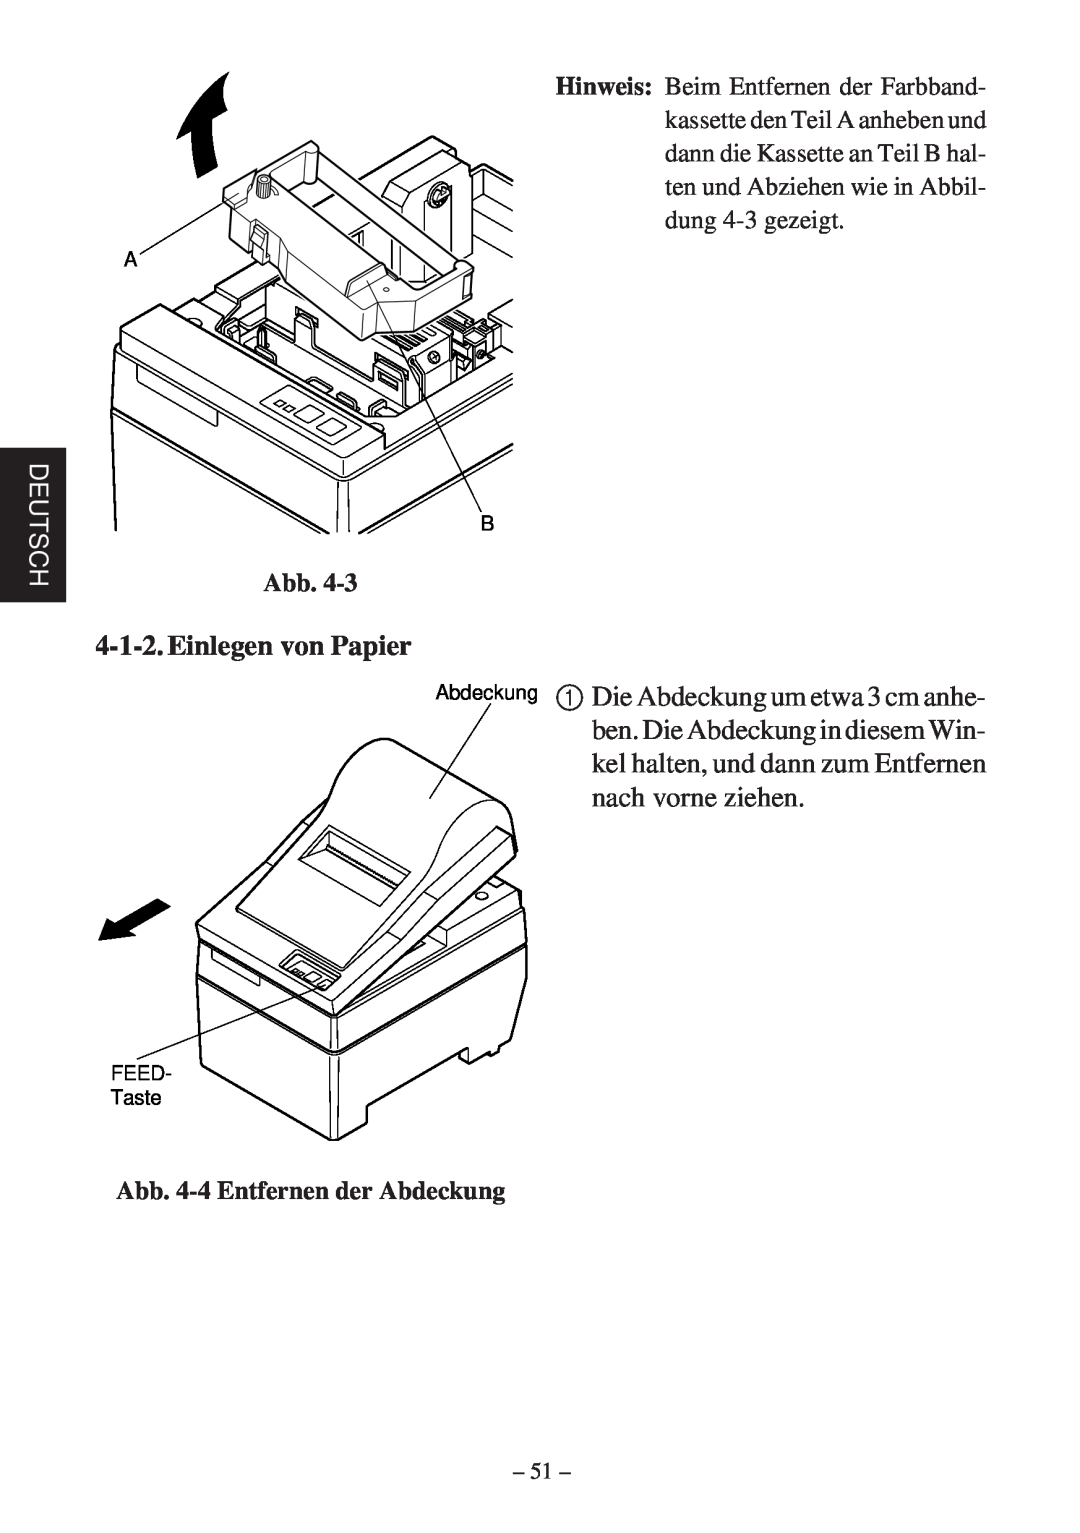 Star Micronics SP200F user manual Einlegen von Papier, Deutsch, Abb. 4-4 Entfernen der Abdeckung 